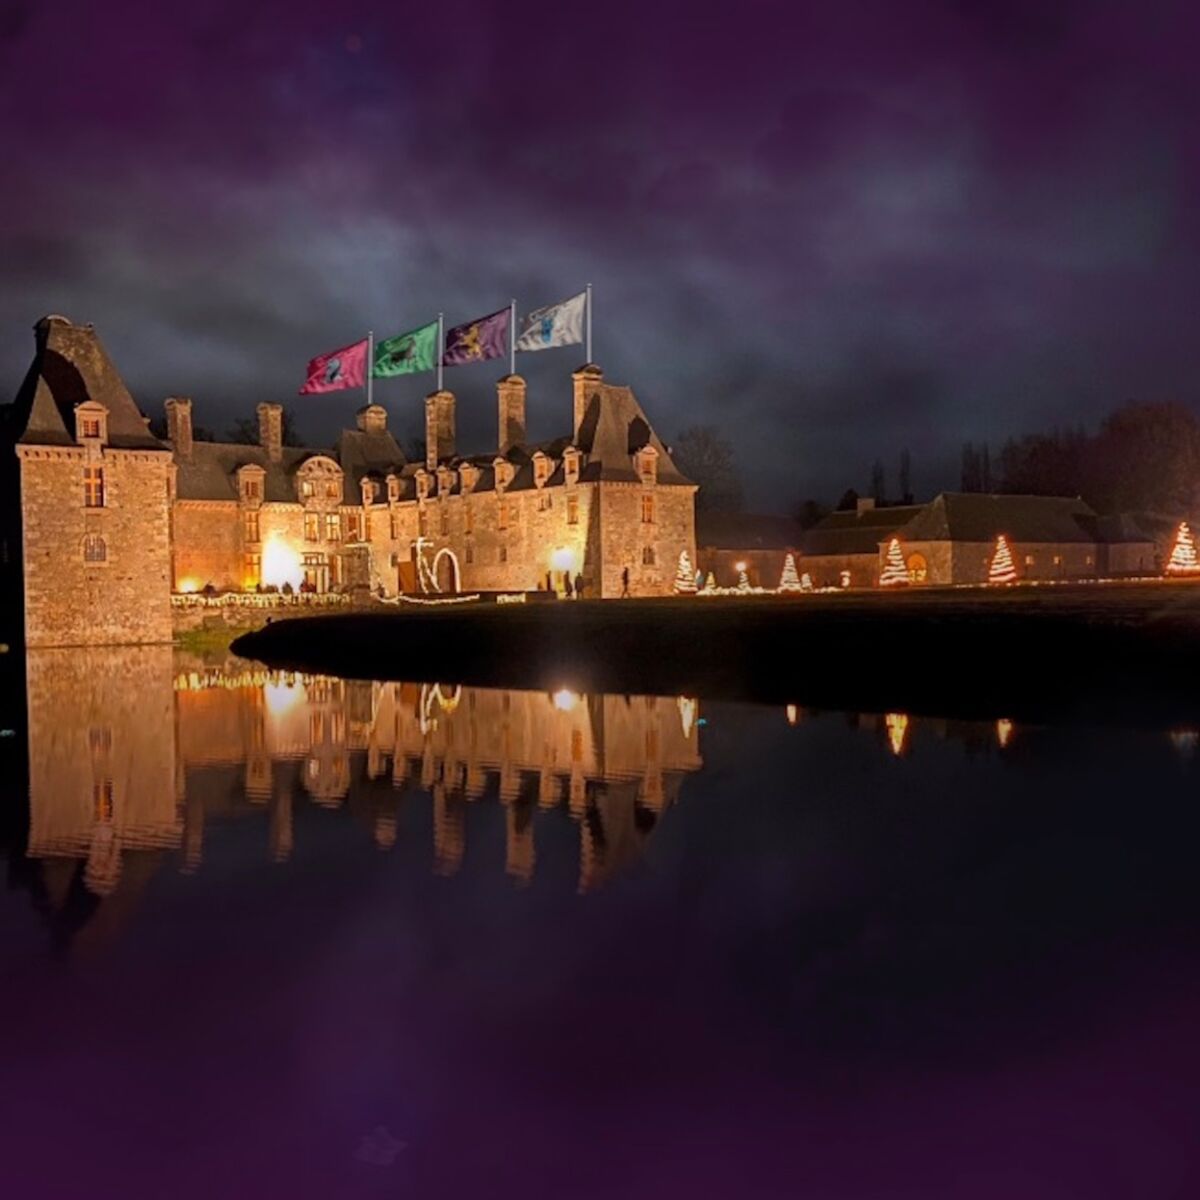 Harry Potter : un château inspiré de Poudlard ouvre ses portes en Bretagne  : Femme Actuelle Le MAG